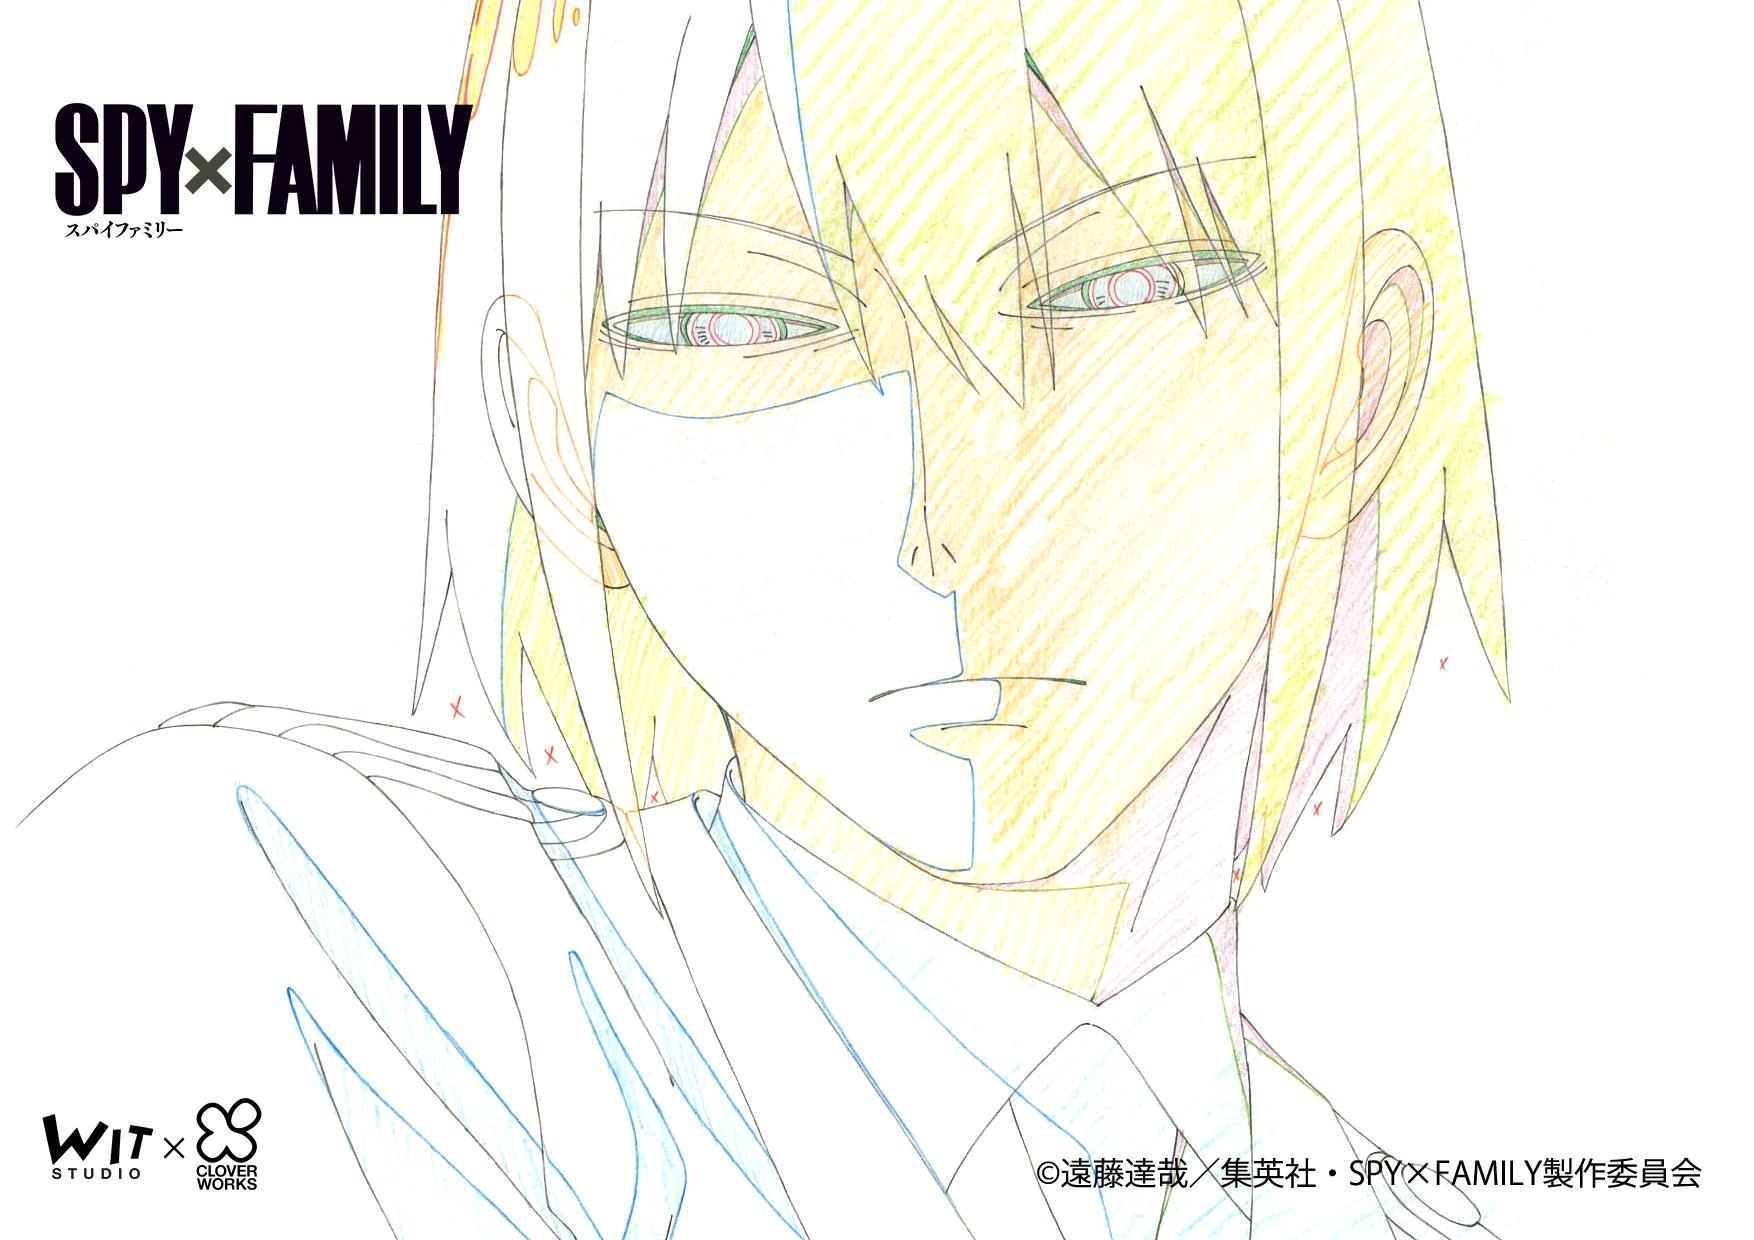 Anime SPY x FAMILY kỷ niệm tập thứ 8 với loạt hình ảnh mới sống động và bắt mắt - Ảnh 3.